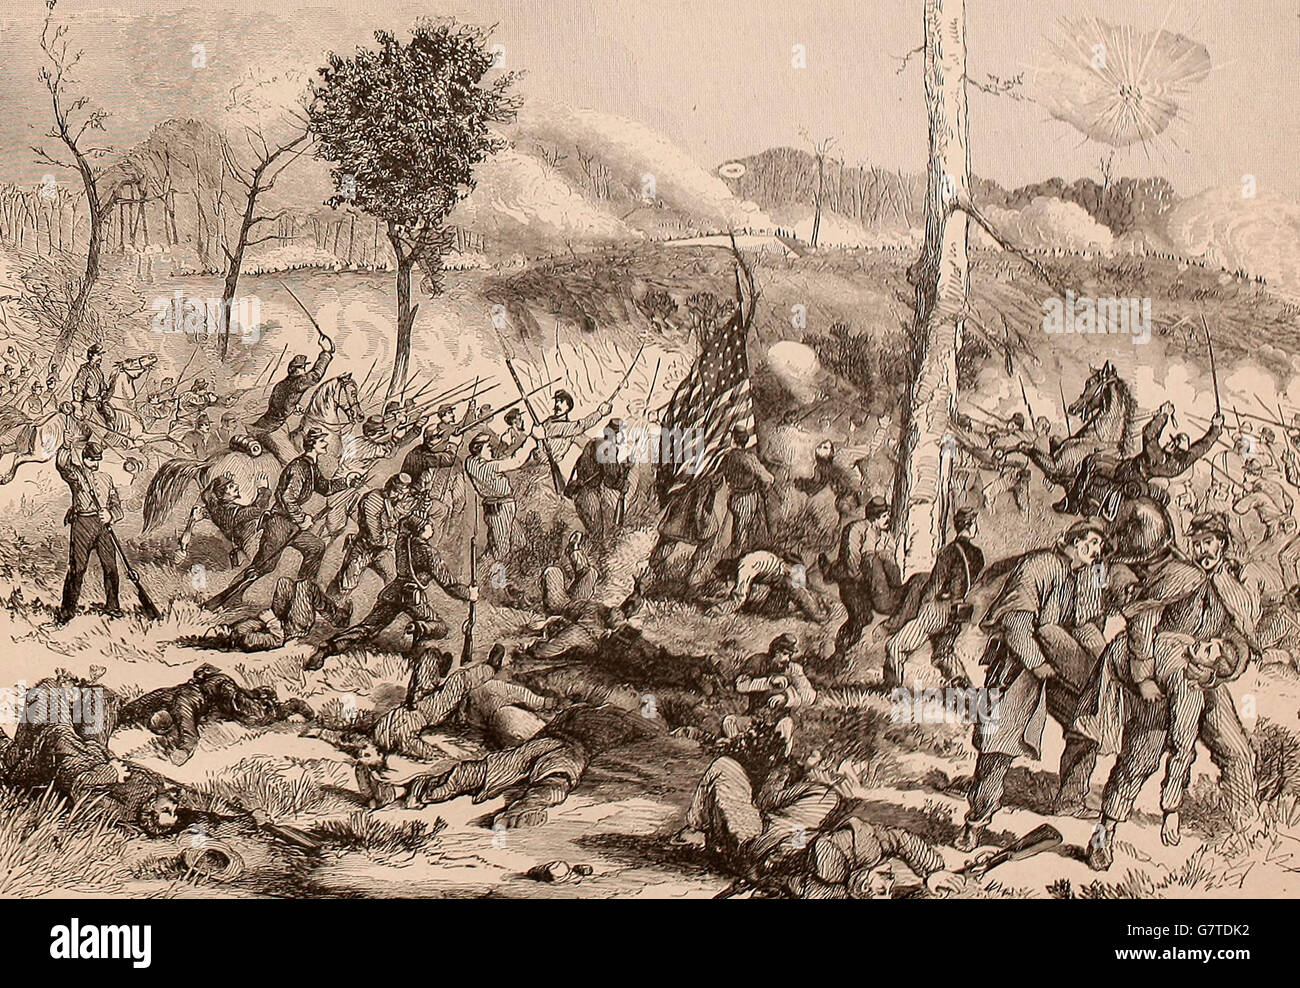 Colonel Morrison Aufladen auf die Außenwerke von Fort Donelson, 13. Februar 1862. USA Bürgerkrieg Stockfoto